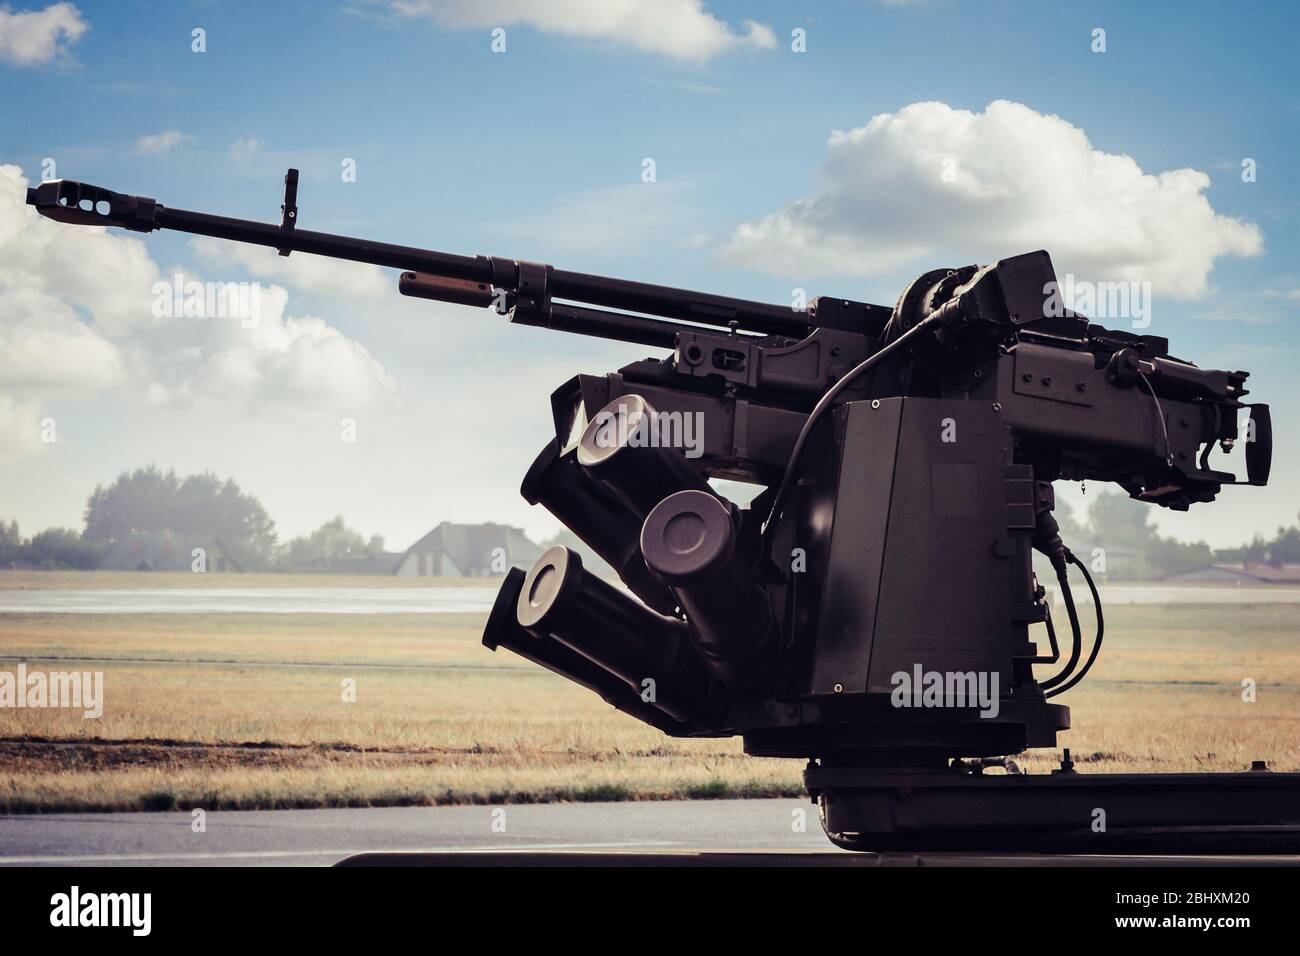 Radom, Mazowieckie / Polen - 23. August 2015: Maschinengewehr auf Militärfahrzeug montiert - Armee/Militär/Rüstungsindustrie. Stockfoto